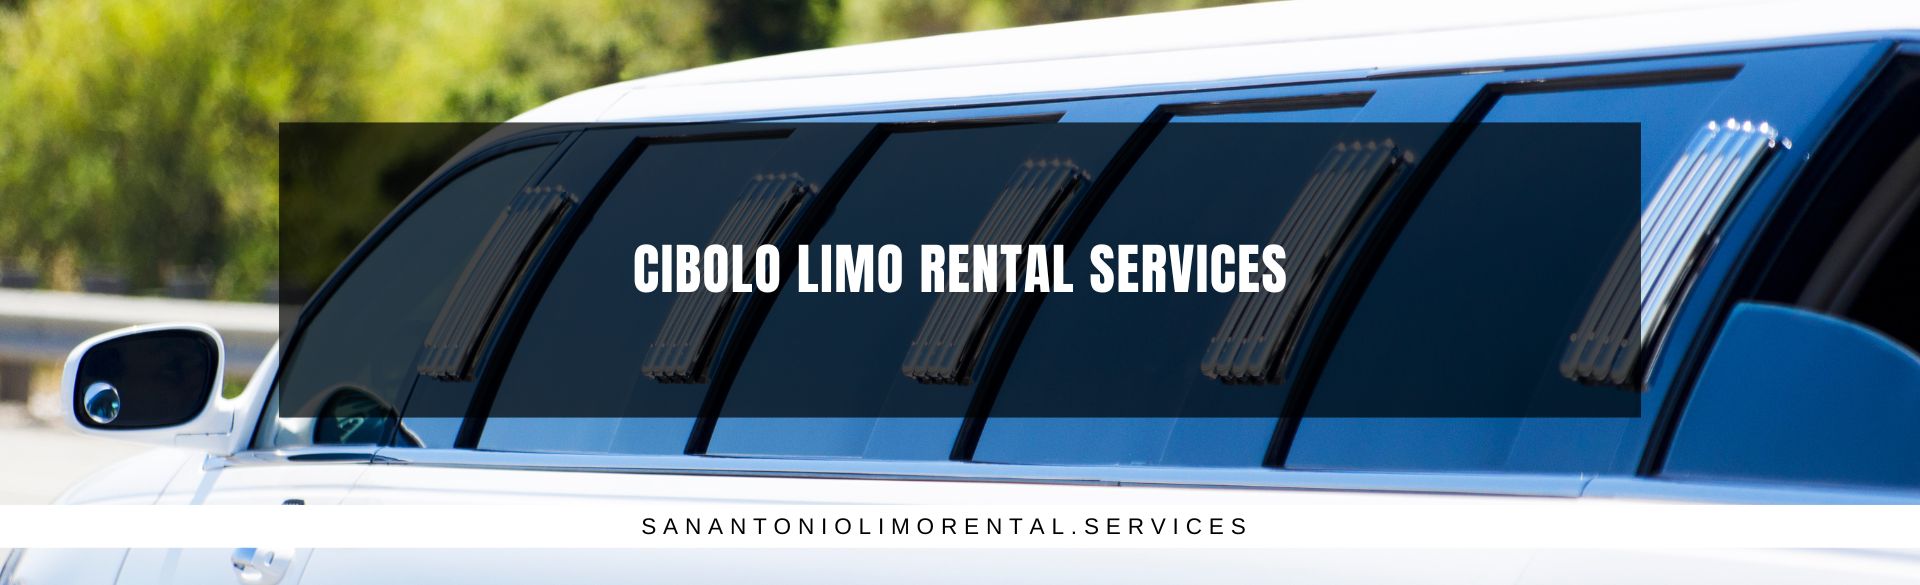 Cibolo Limo Rental Services